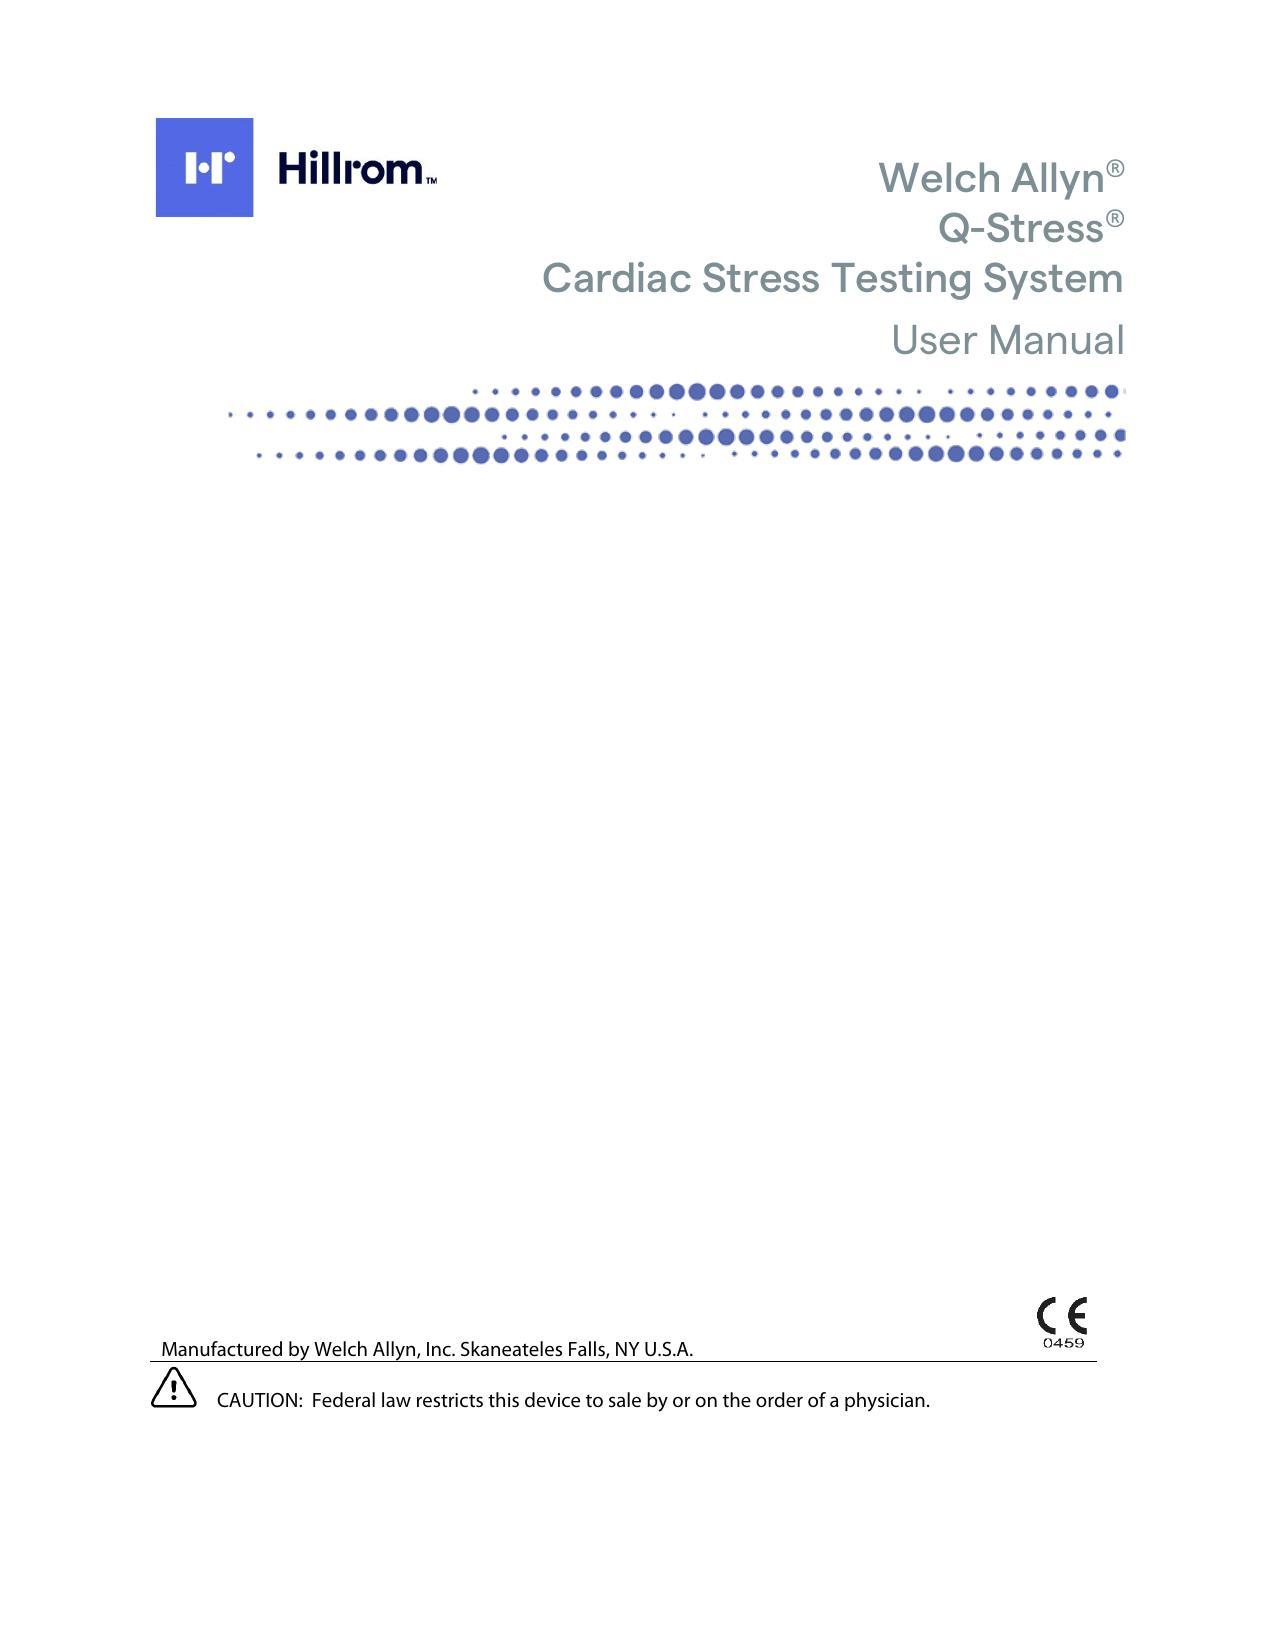 welch-allyn-q-stress-cardiac-stress-testing-system-user-manual.pdf